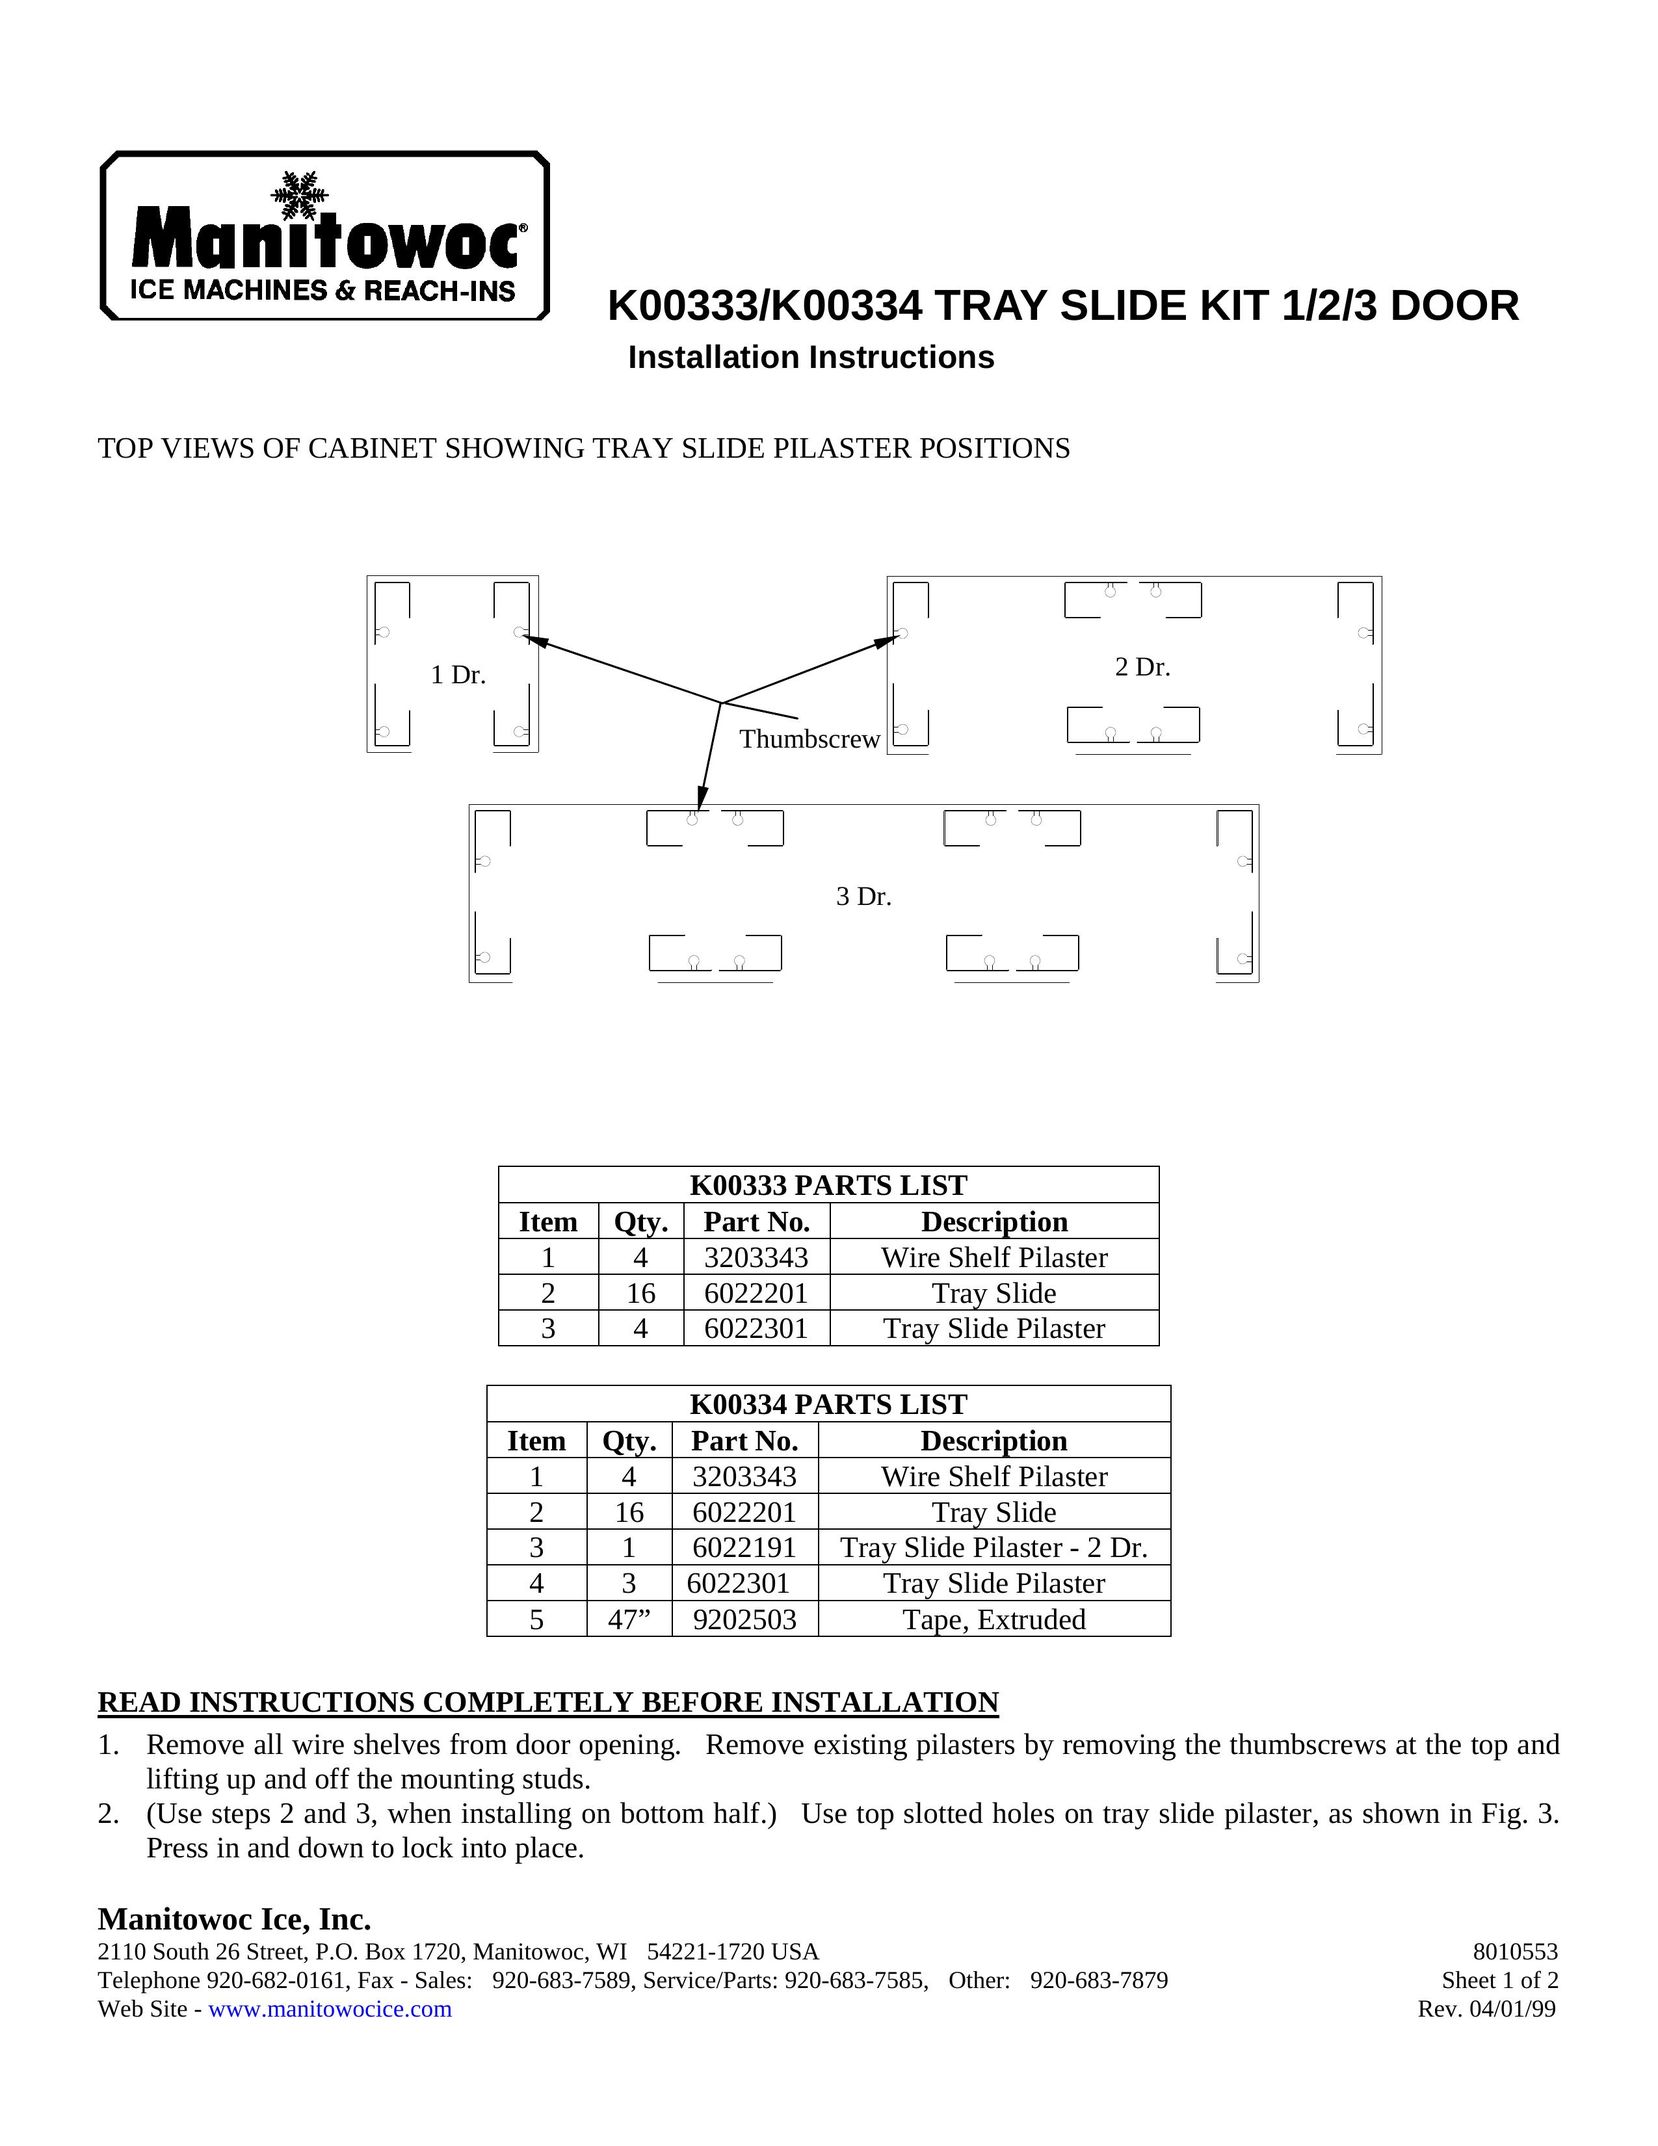 Manitowoc Ice K00333 Baby Furniture User Manual